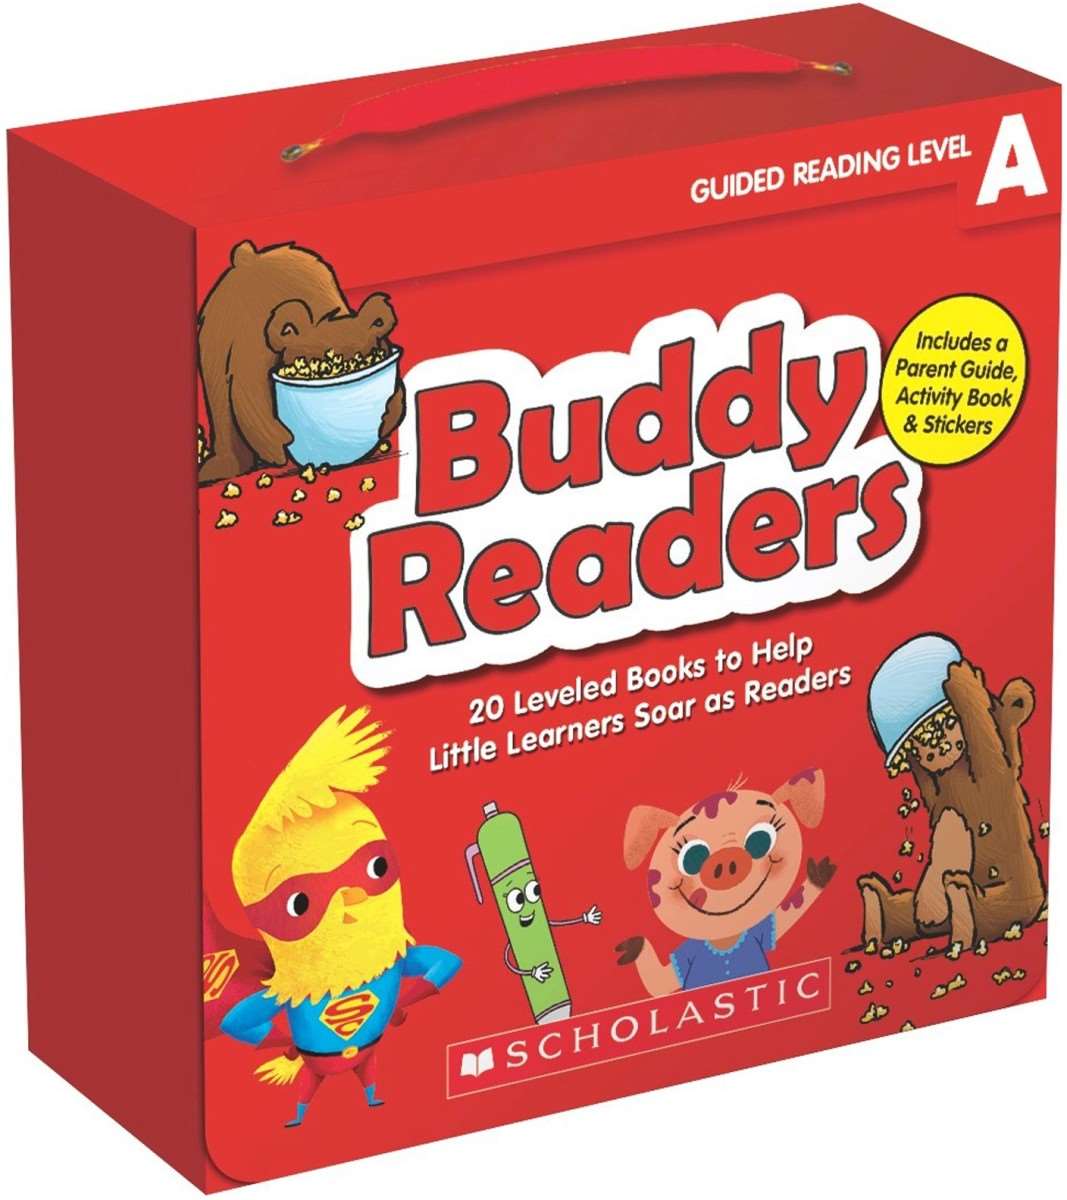 Scholastic игры. Level books. Бадди английский для детей Космо ящики. Reading buddies.